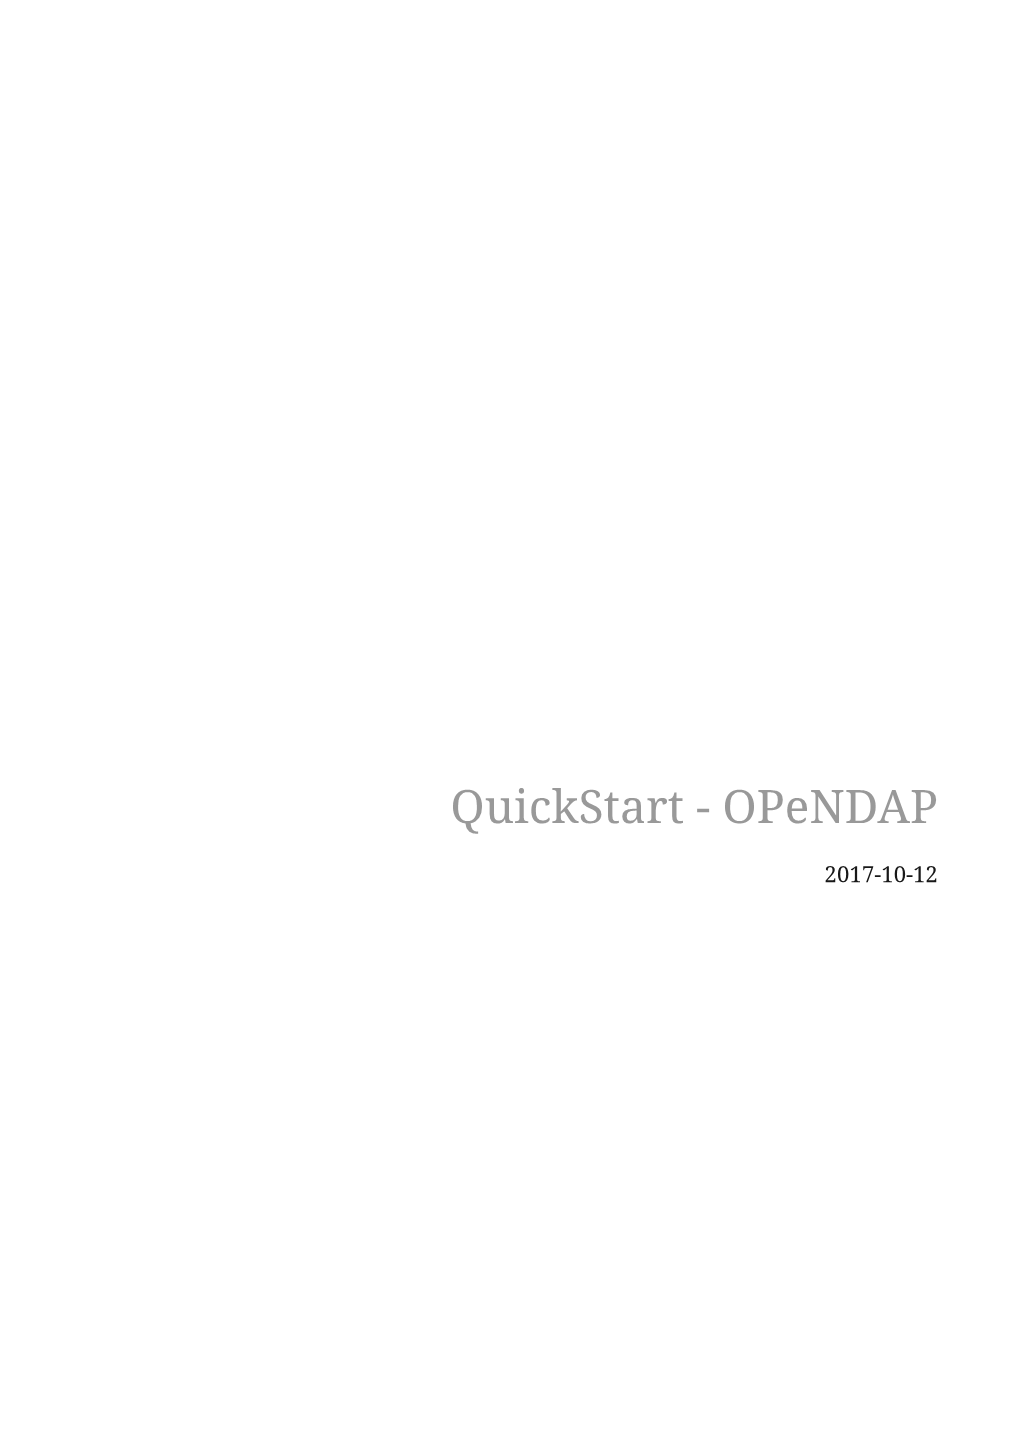 Quickstart - Opendap